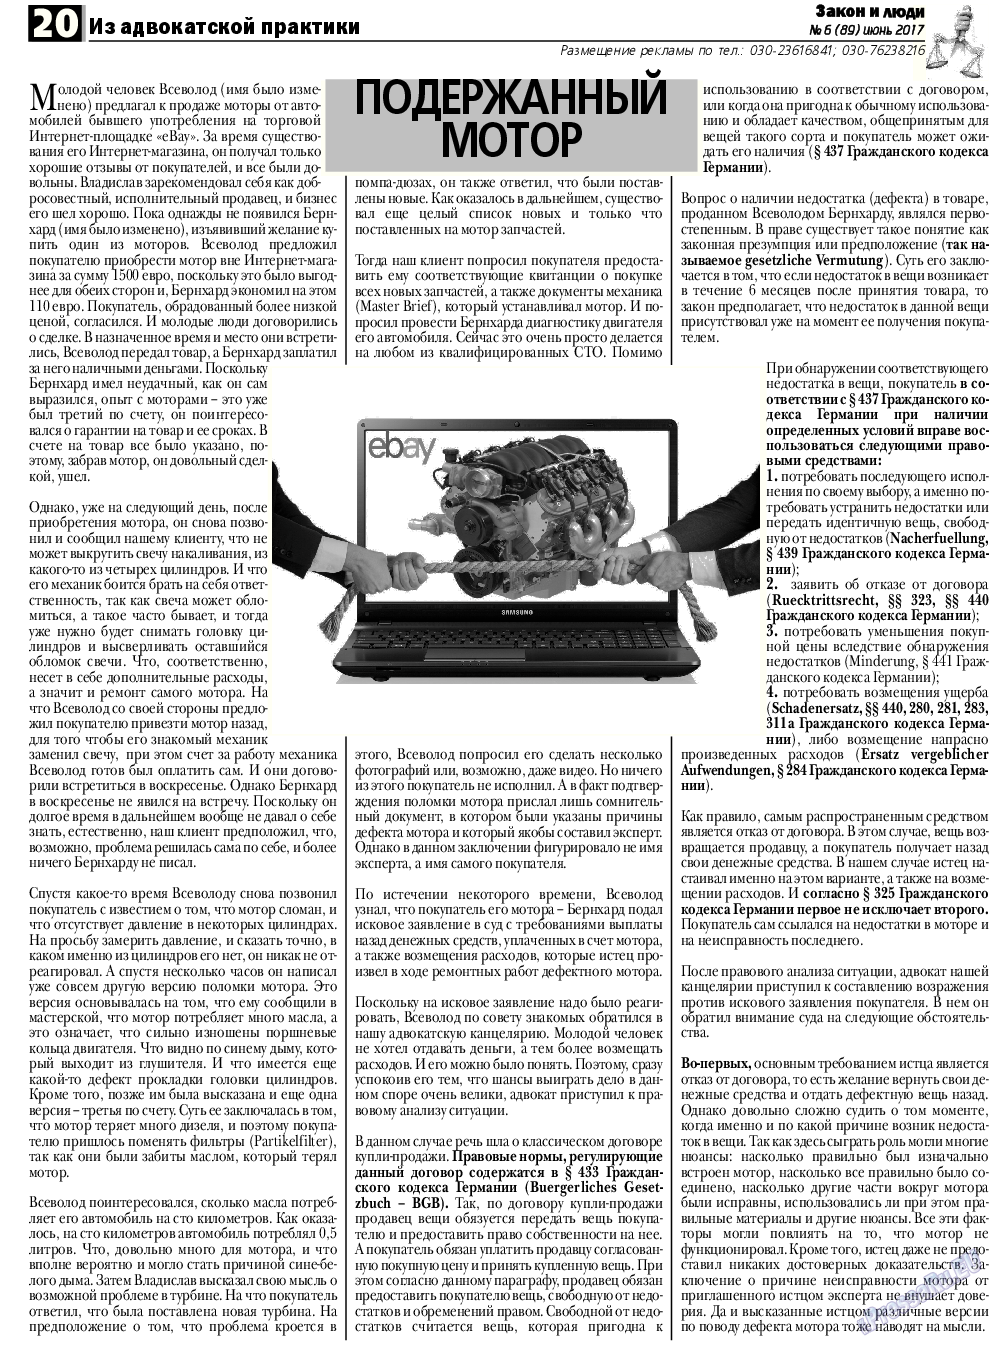 Закон и люди, газета. 2017 №6 стр.20